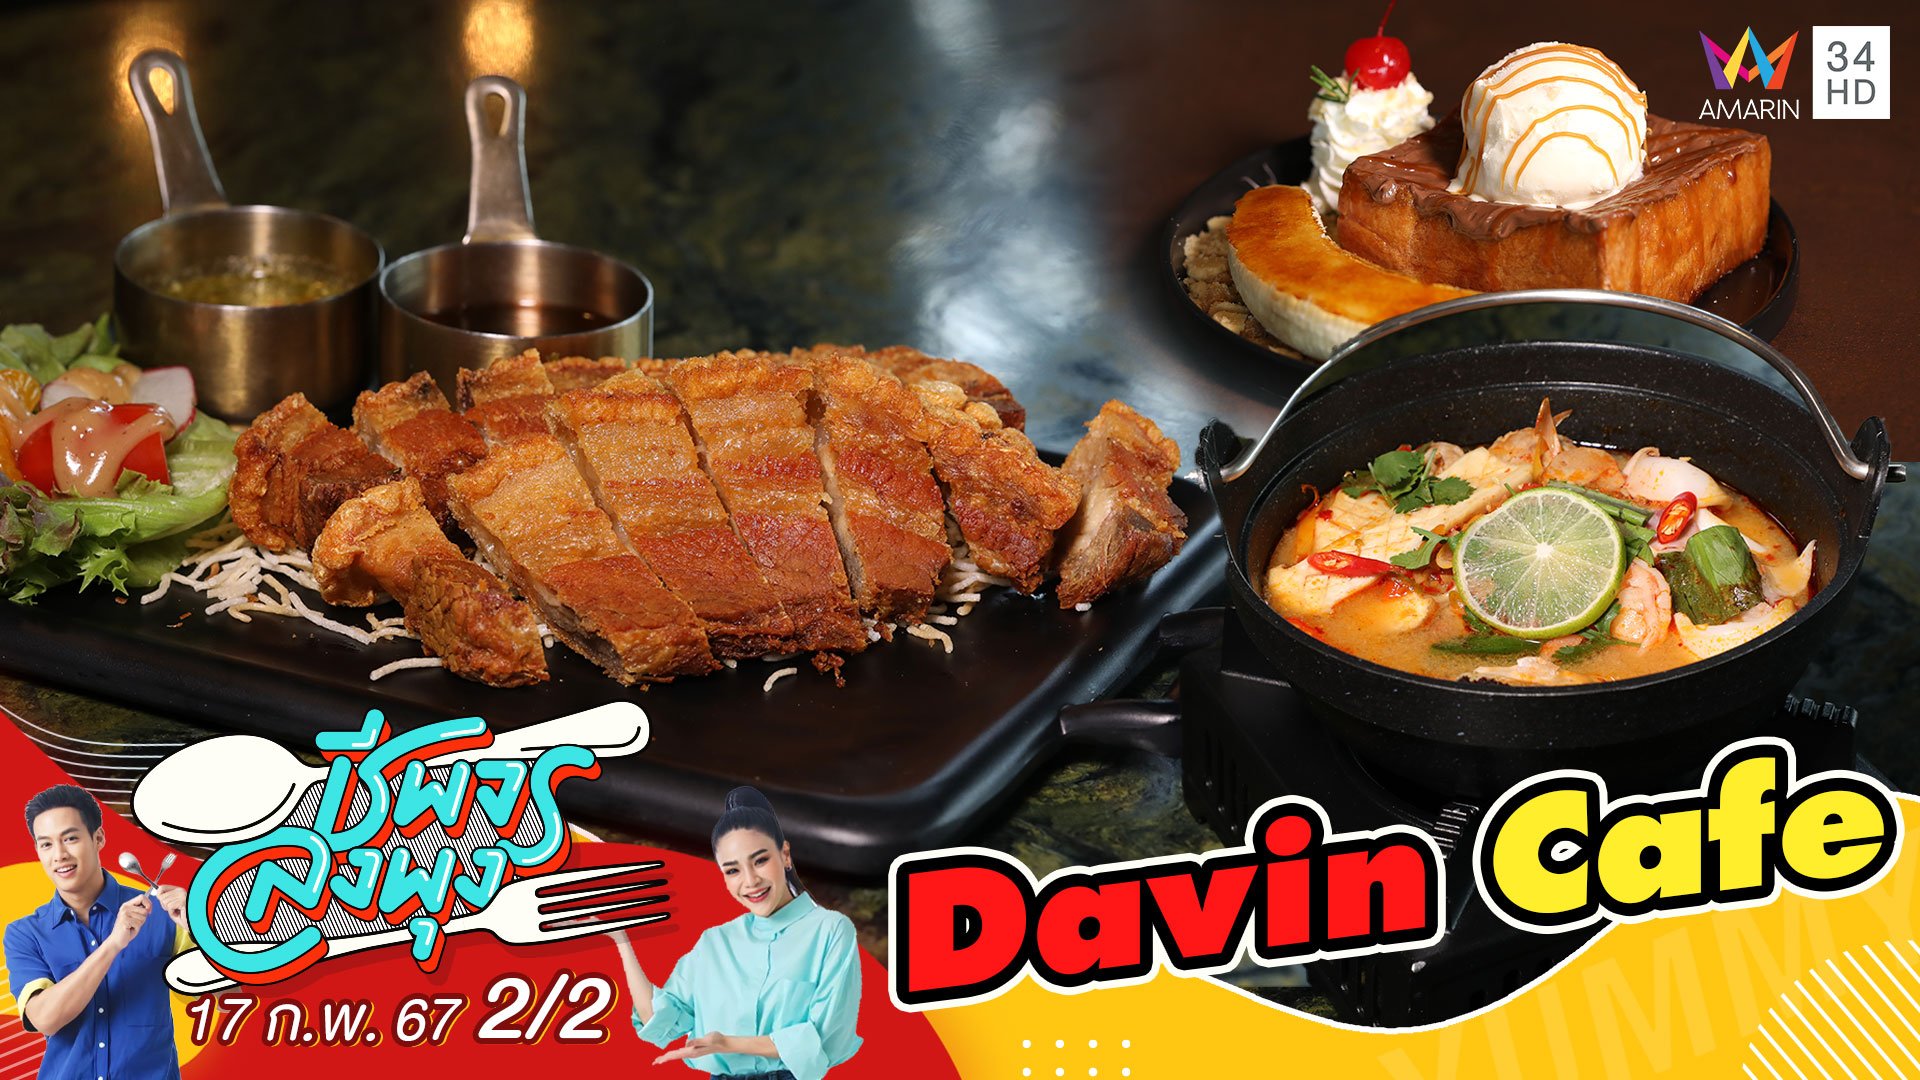 "ร้าน Davin Cafe" คาเฟ่ที่เป็นมากกว่าคาเฟ่ | ชีพจรลงพุง | 17 ก.พ. 67 (2/2) | AMARIN TVHD34